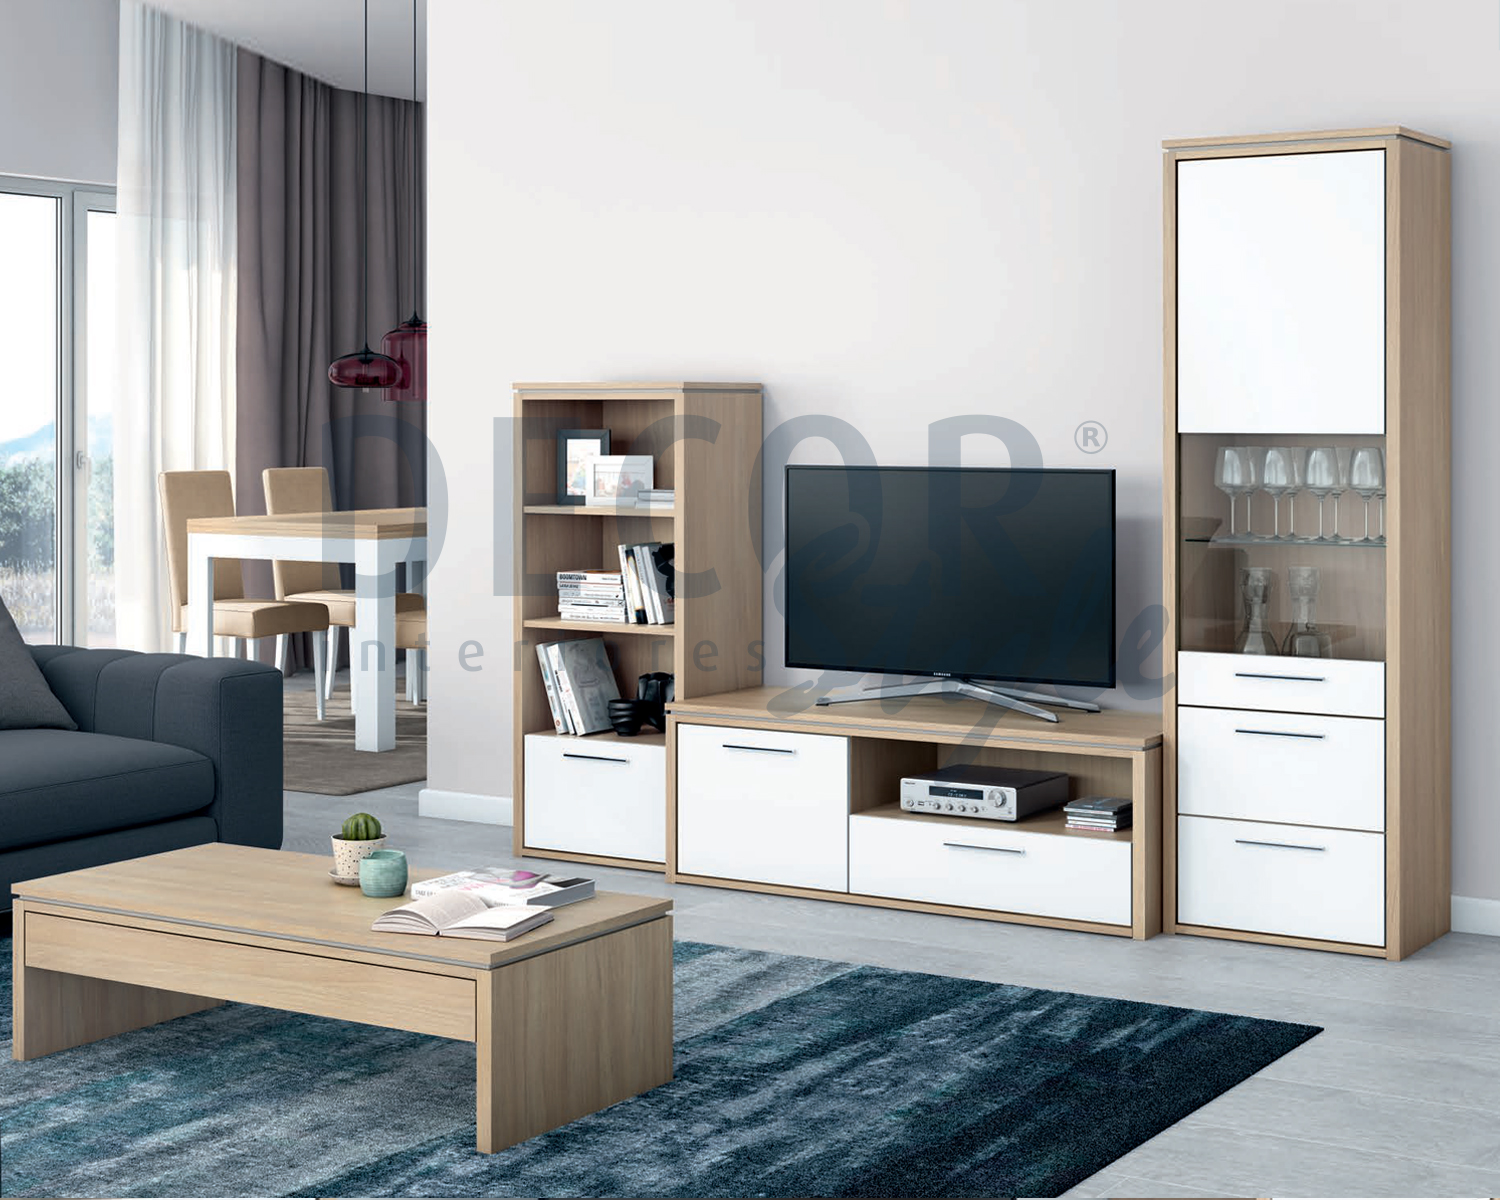 sala de estar rossio lisboa elegante minimalista e simples de madeira, material económico branco e bege ou cinza elegante moderno